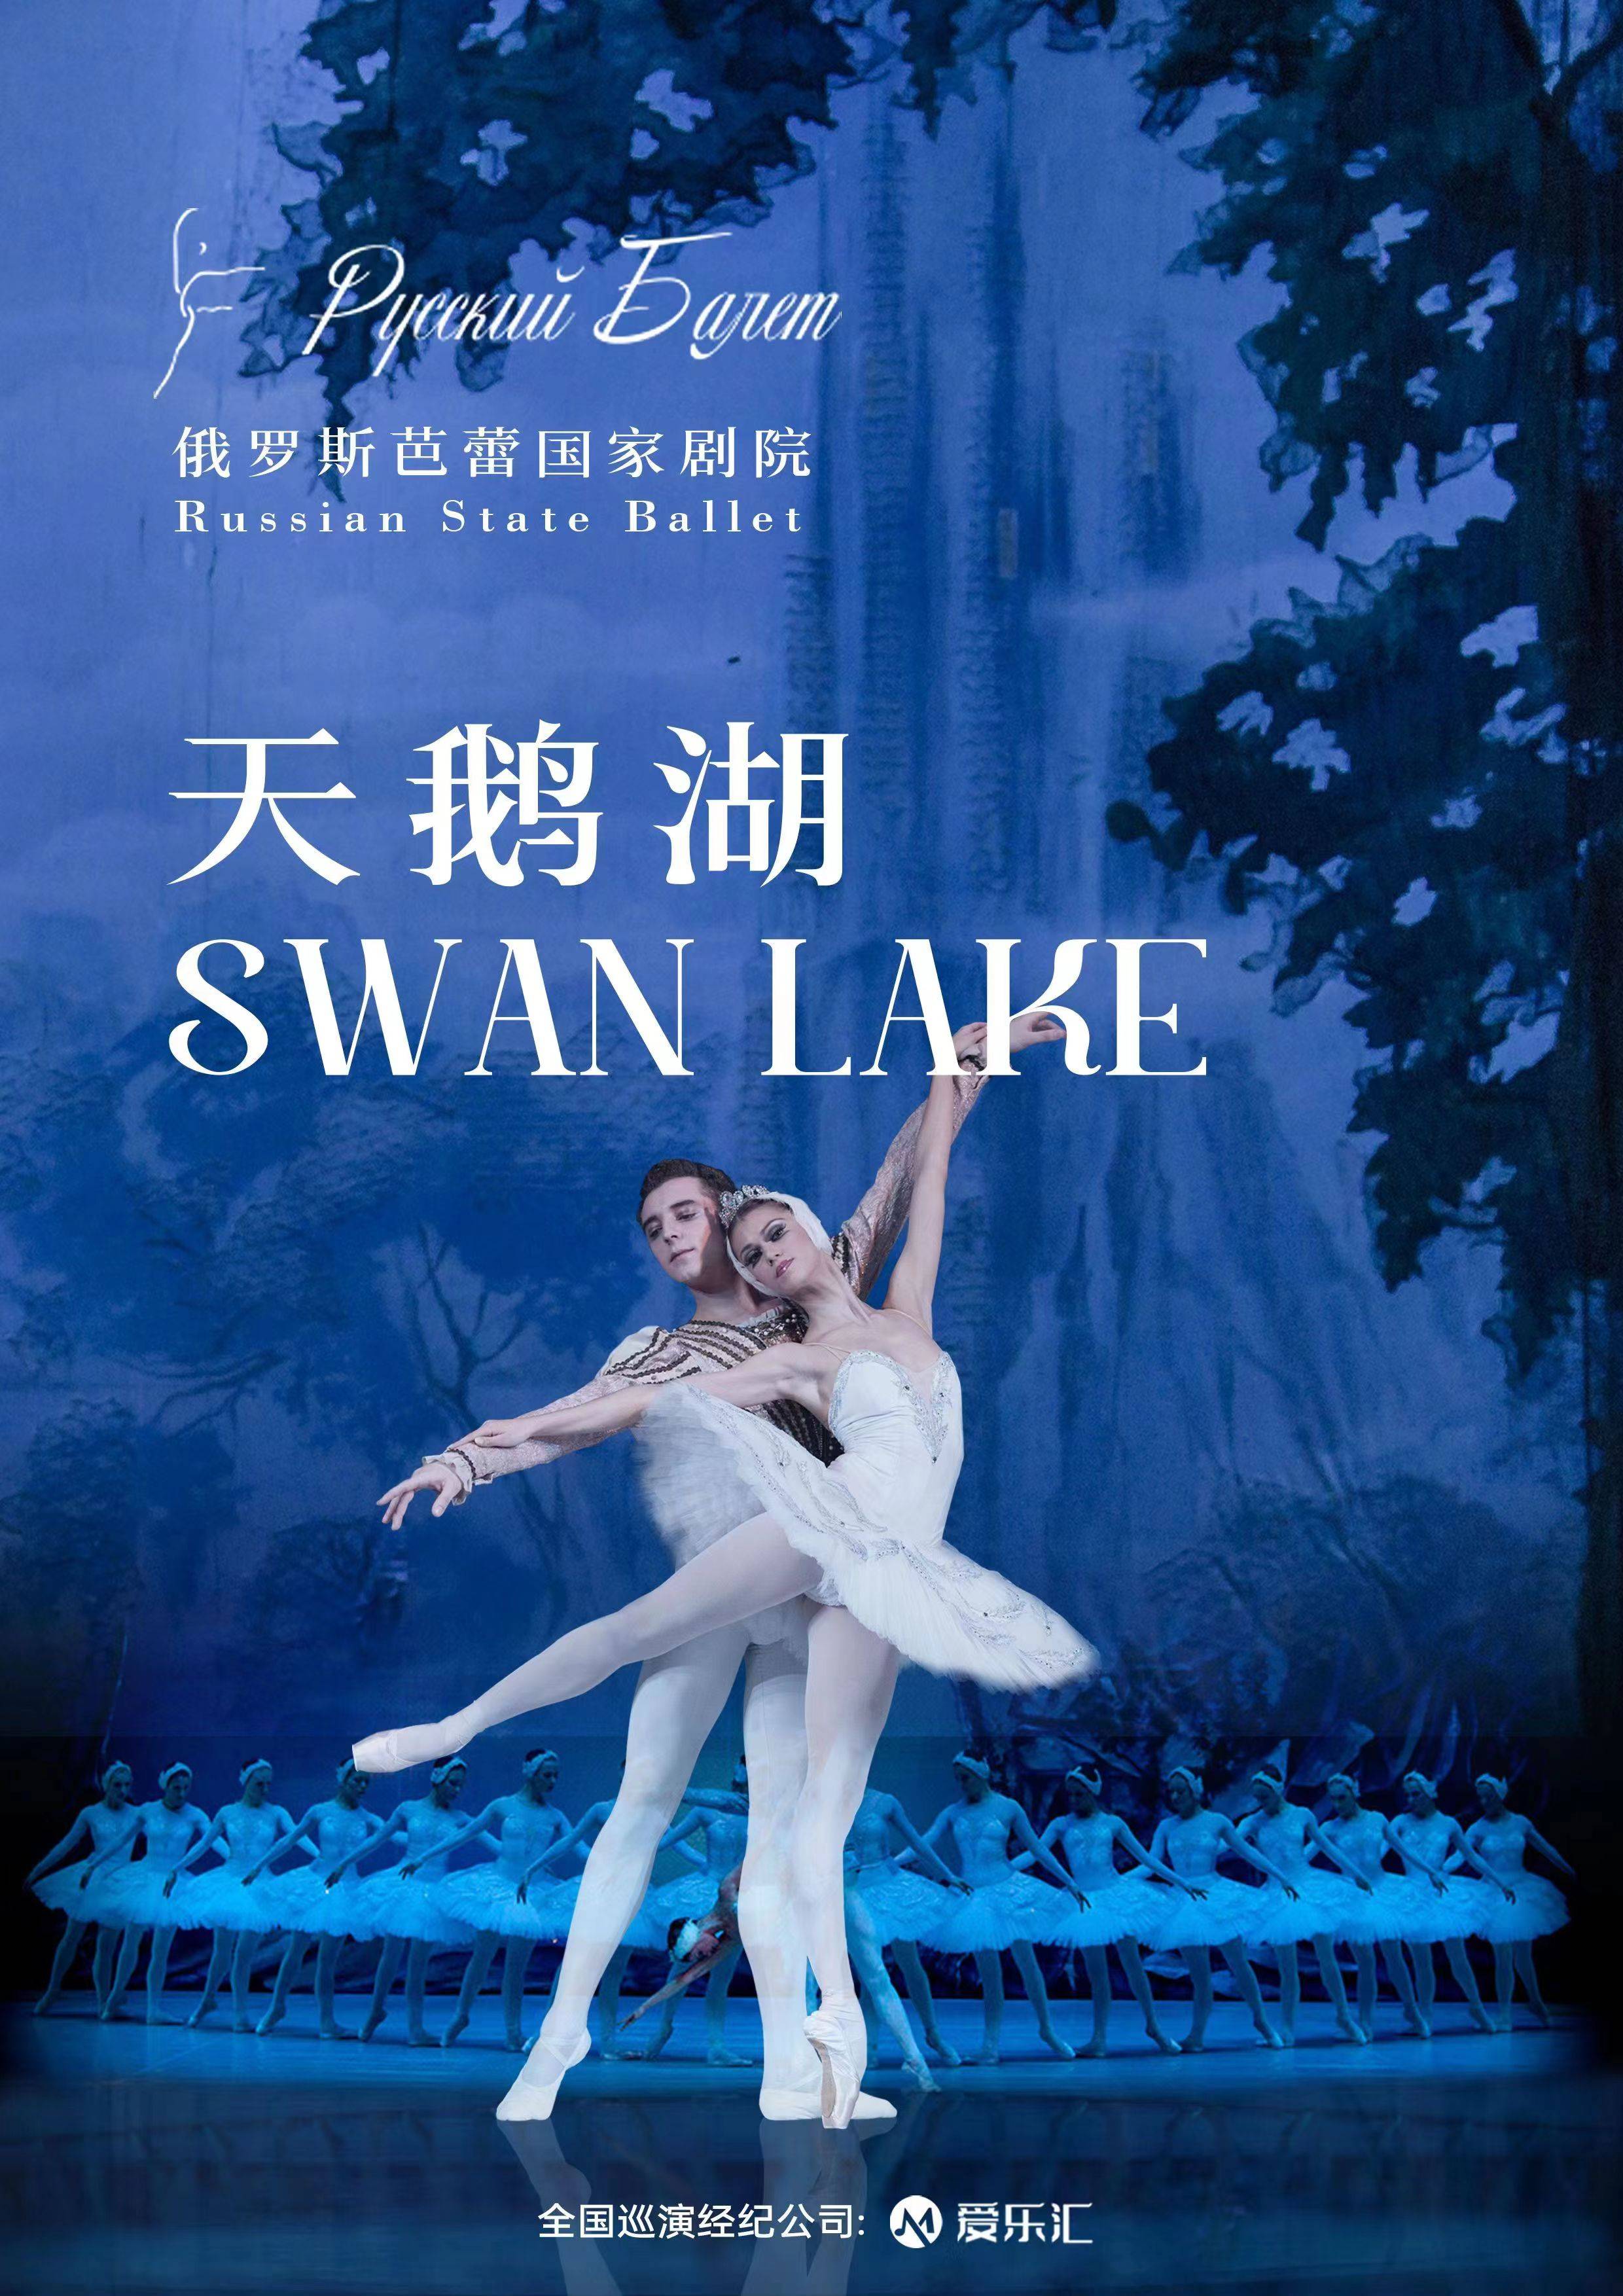 Russian State Ballet: Swan Lake 